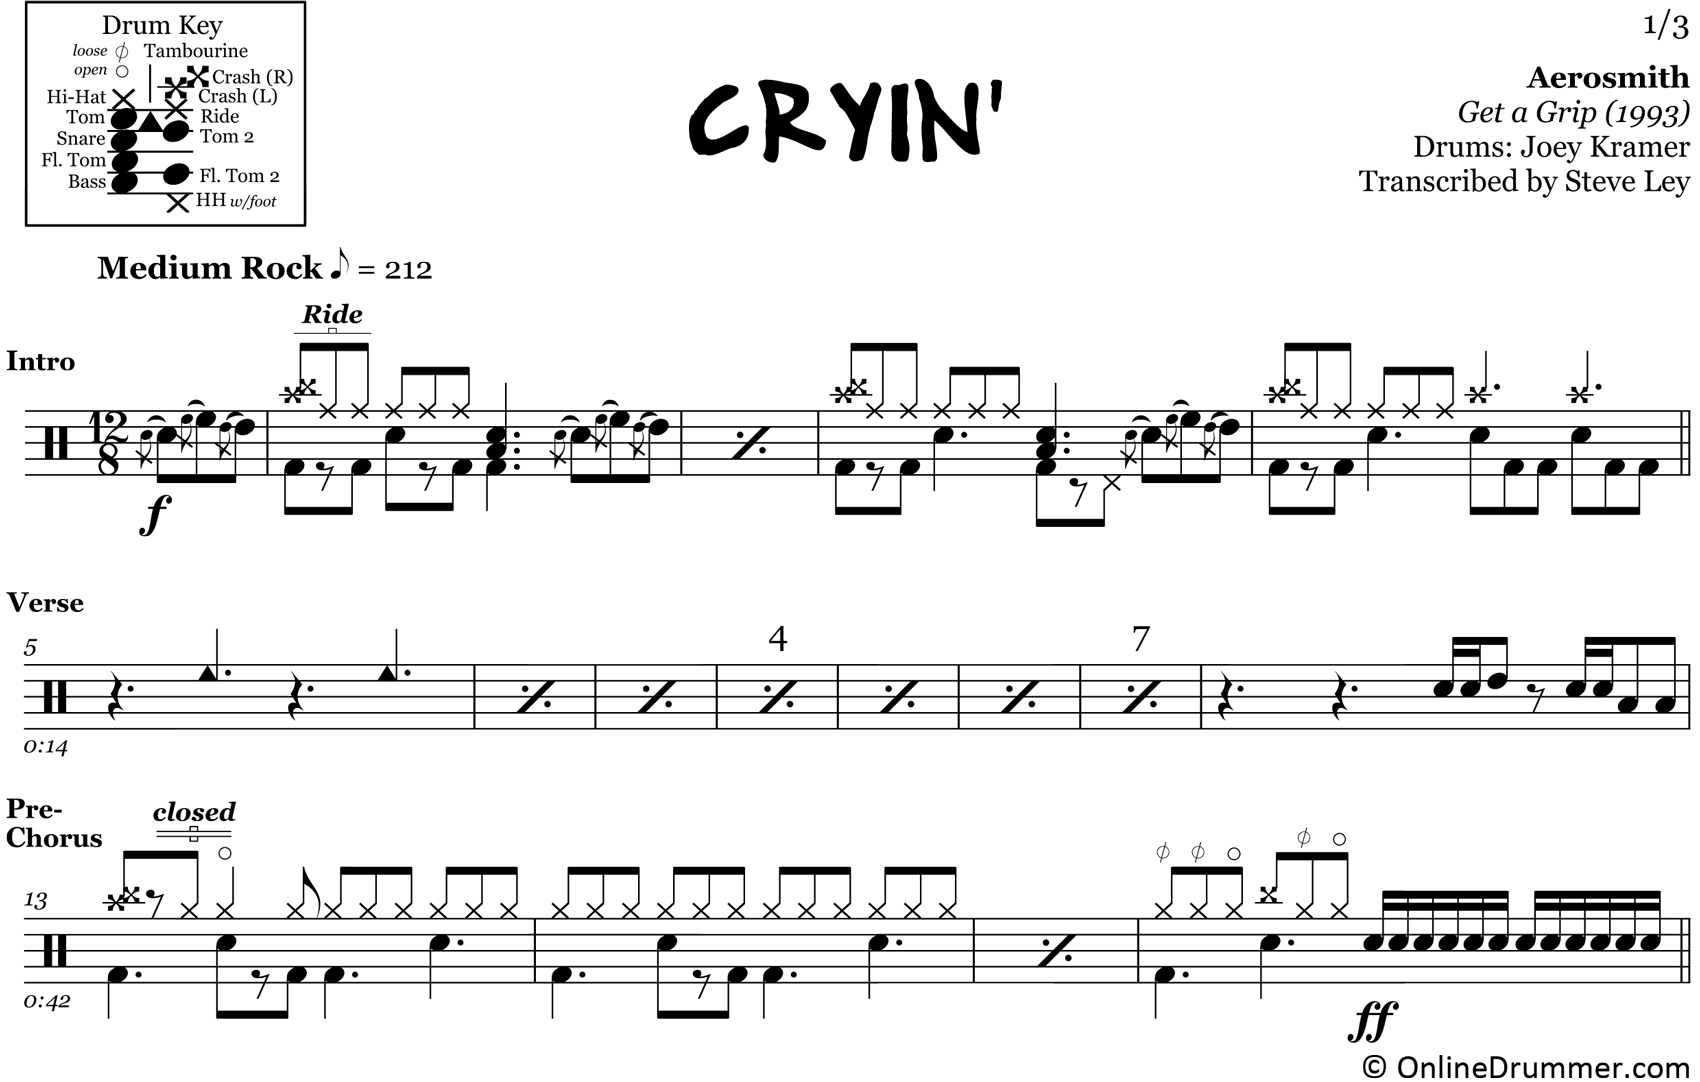 Aerosmith's Cryin